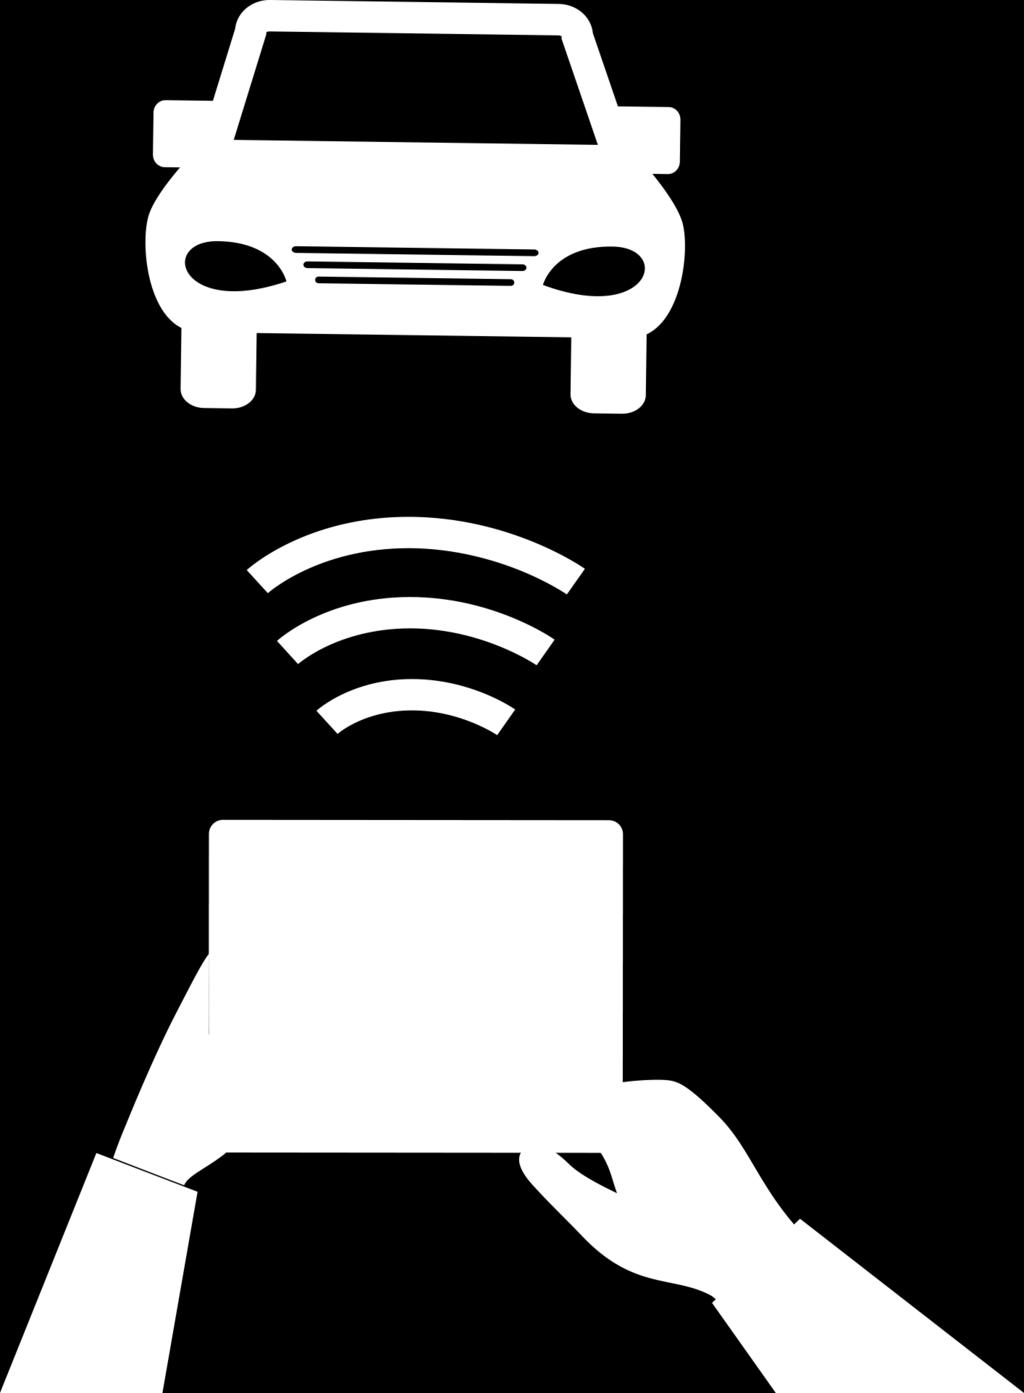 inteligentes o Tablets, conectados al auto vía el puerto USB, Bluetooth o Wi-Fi. También es posible a través de dispositivos que se conectan al puerto de diagnóstico del auto (OBD-II port).